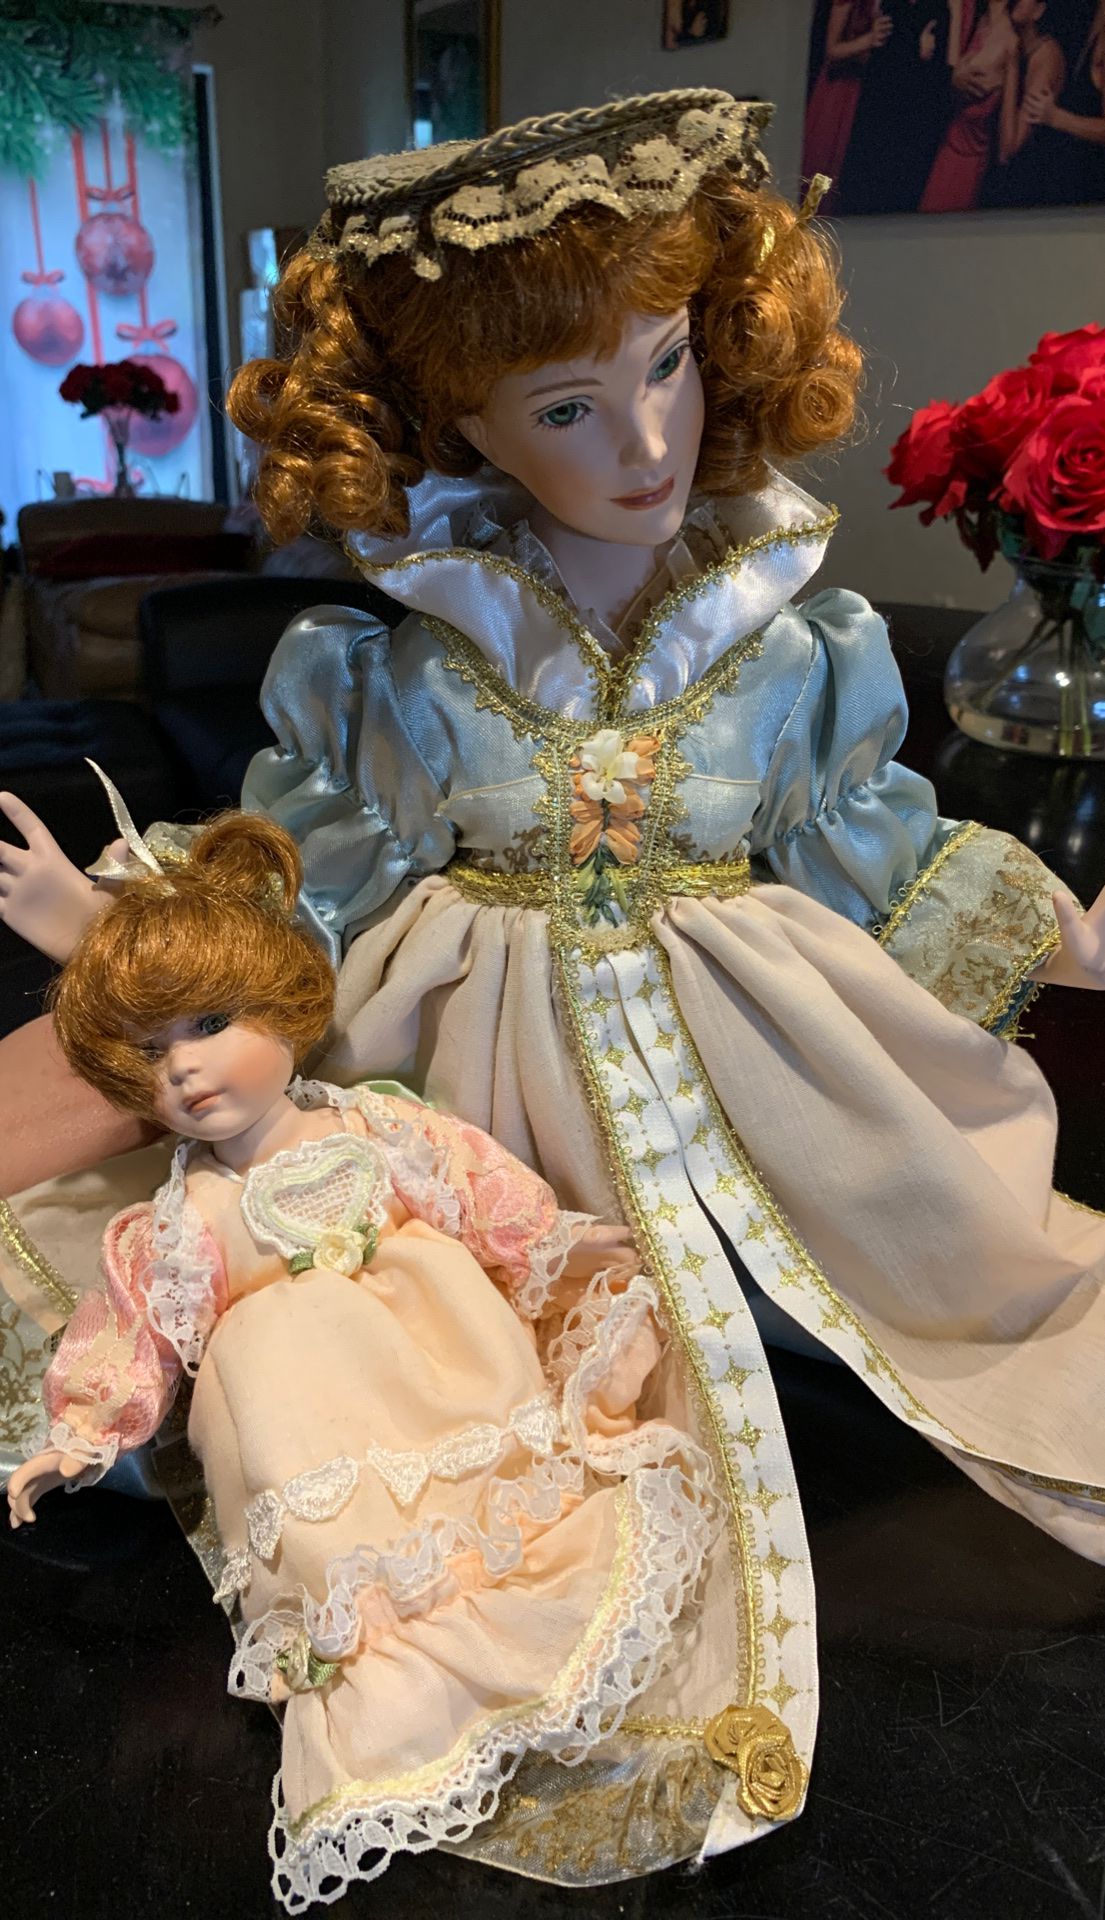 Antique style porcelain dolls